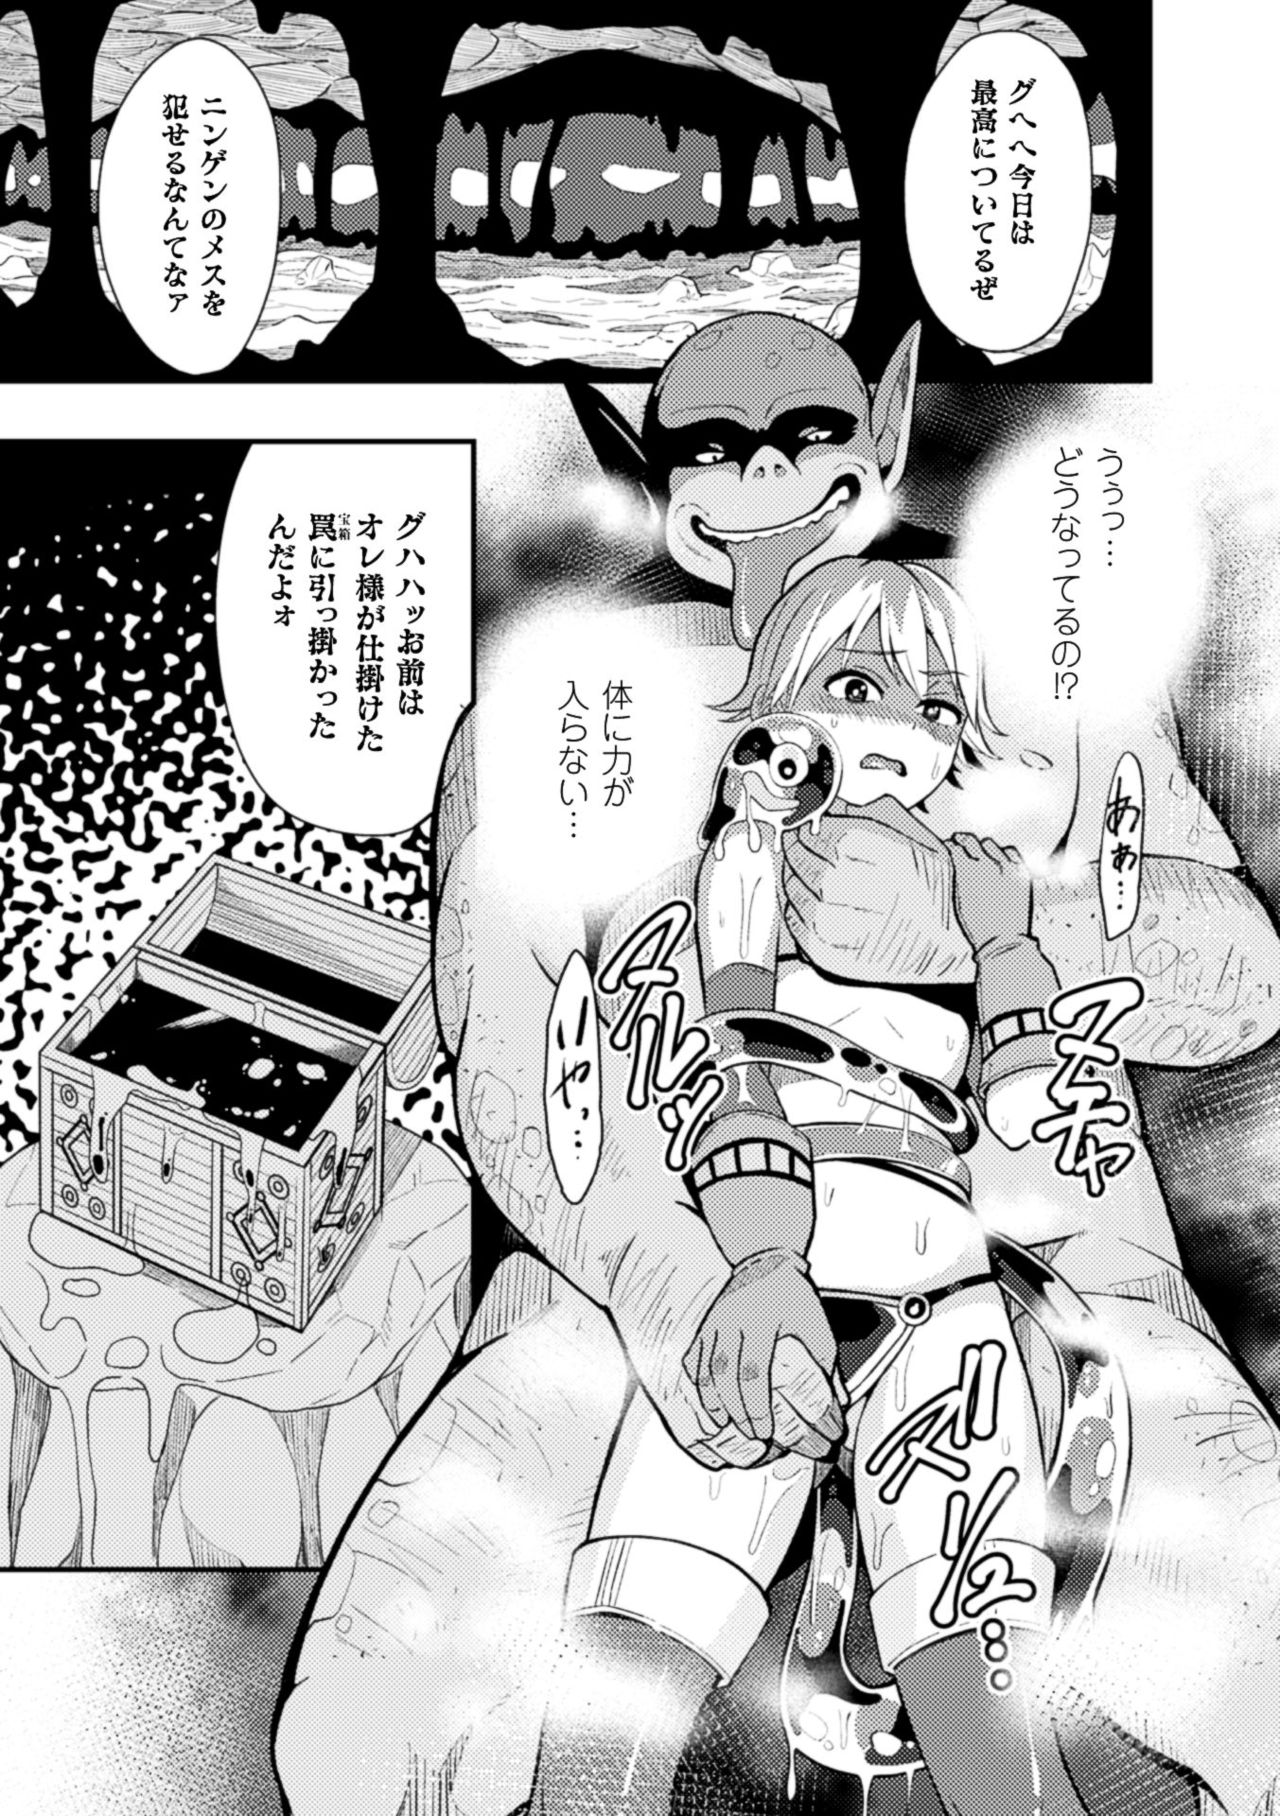 2Dコミックマガジン「かららくめきゅうダンジョンにこだまするめすの共生Vol.2」